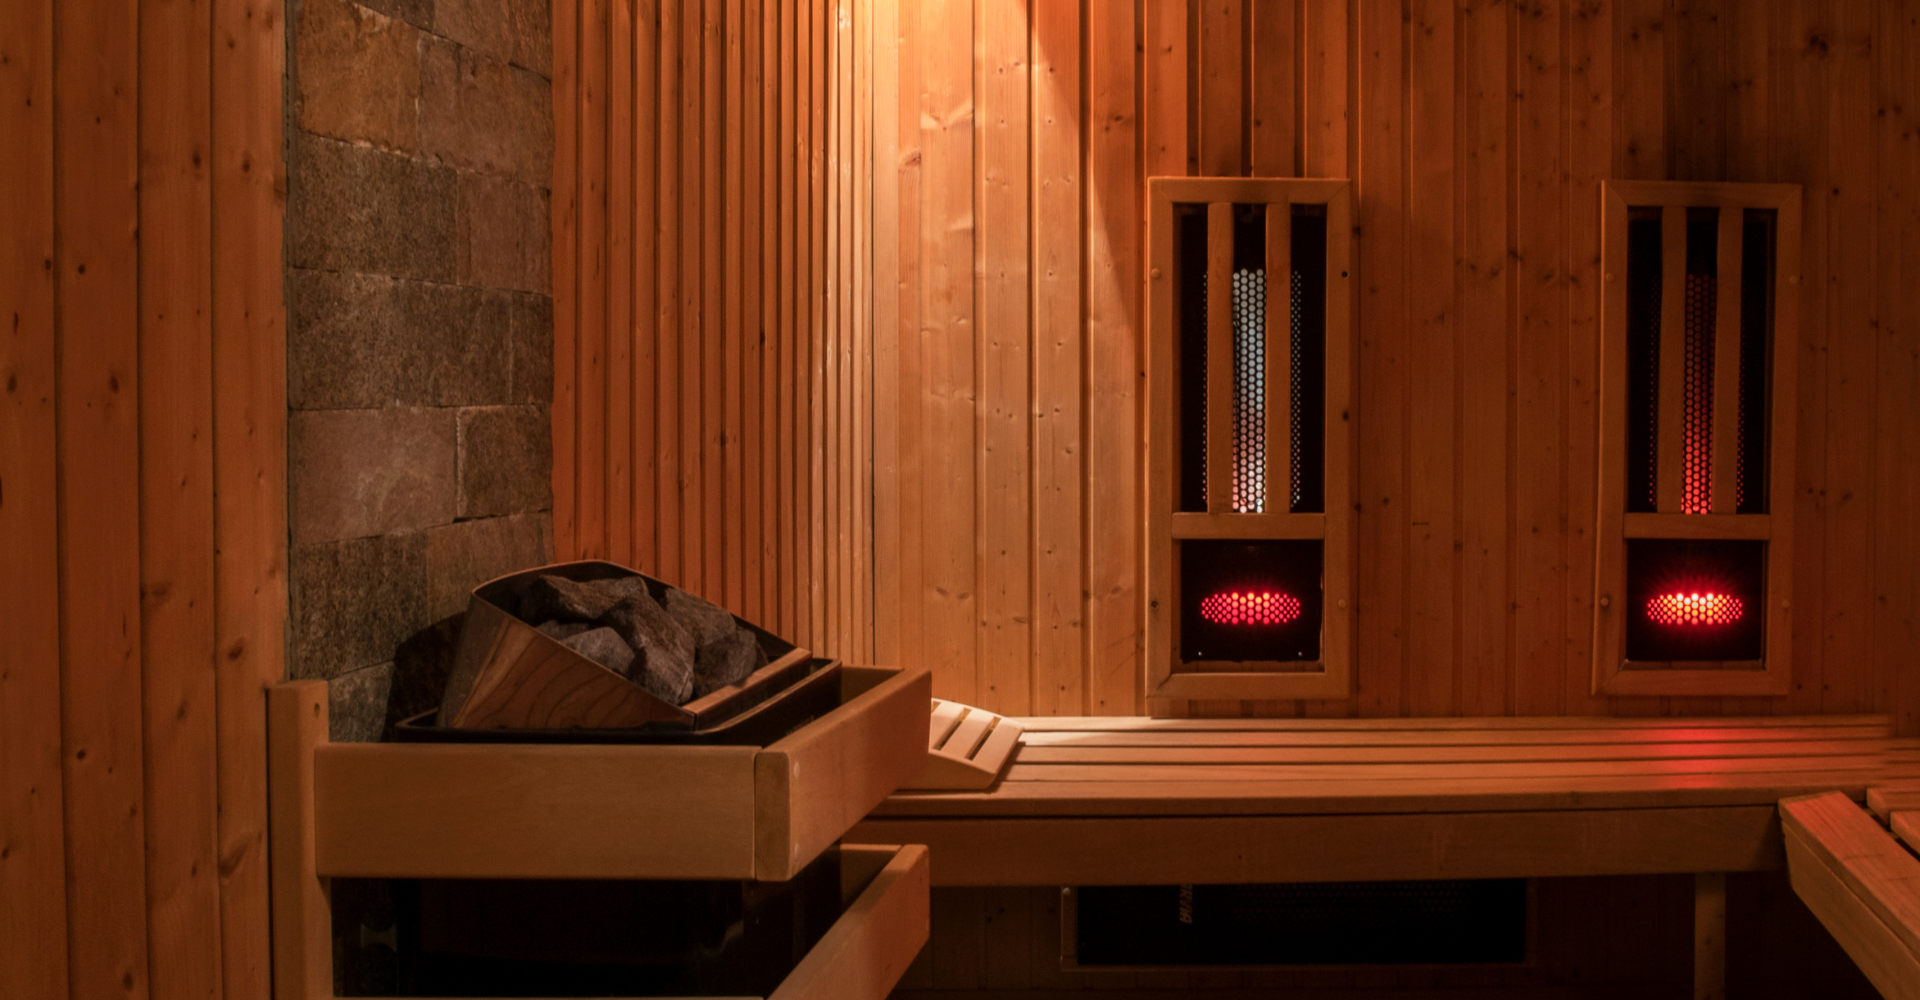 Inside a infrared sauna